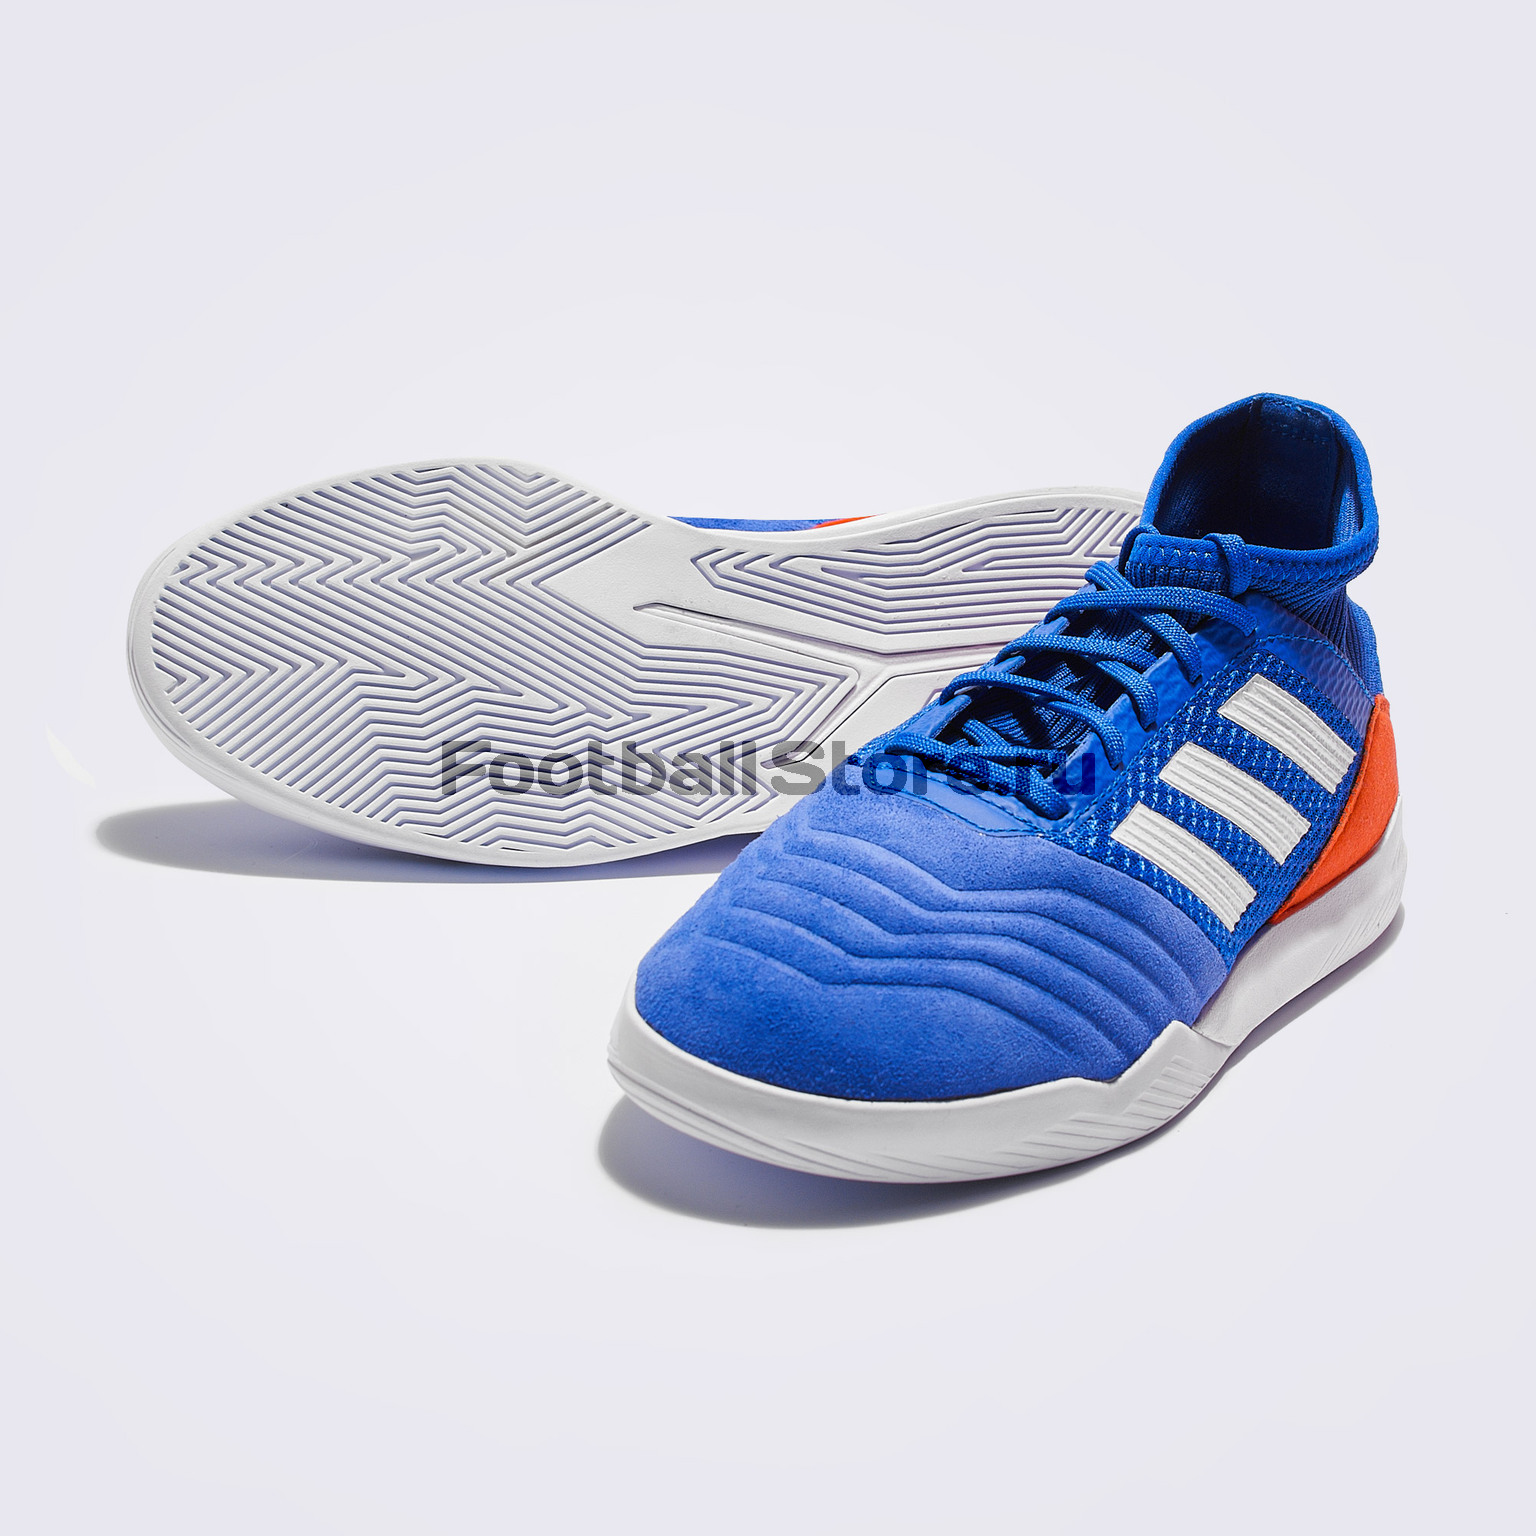 Футбольная обувь Adidas Predator 19.3 TR BB9086